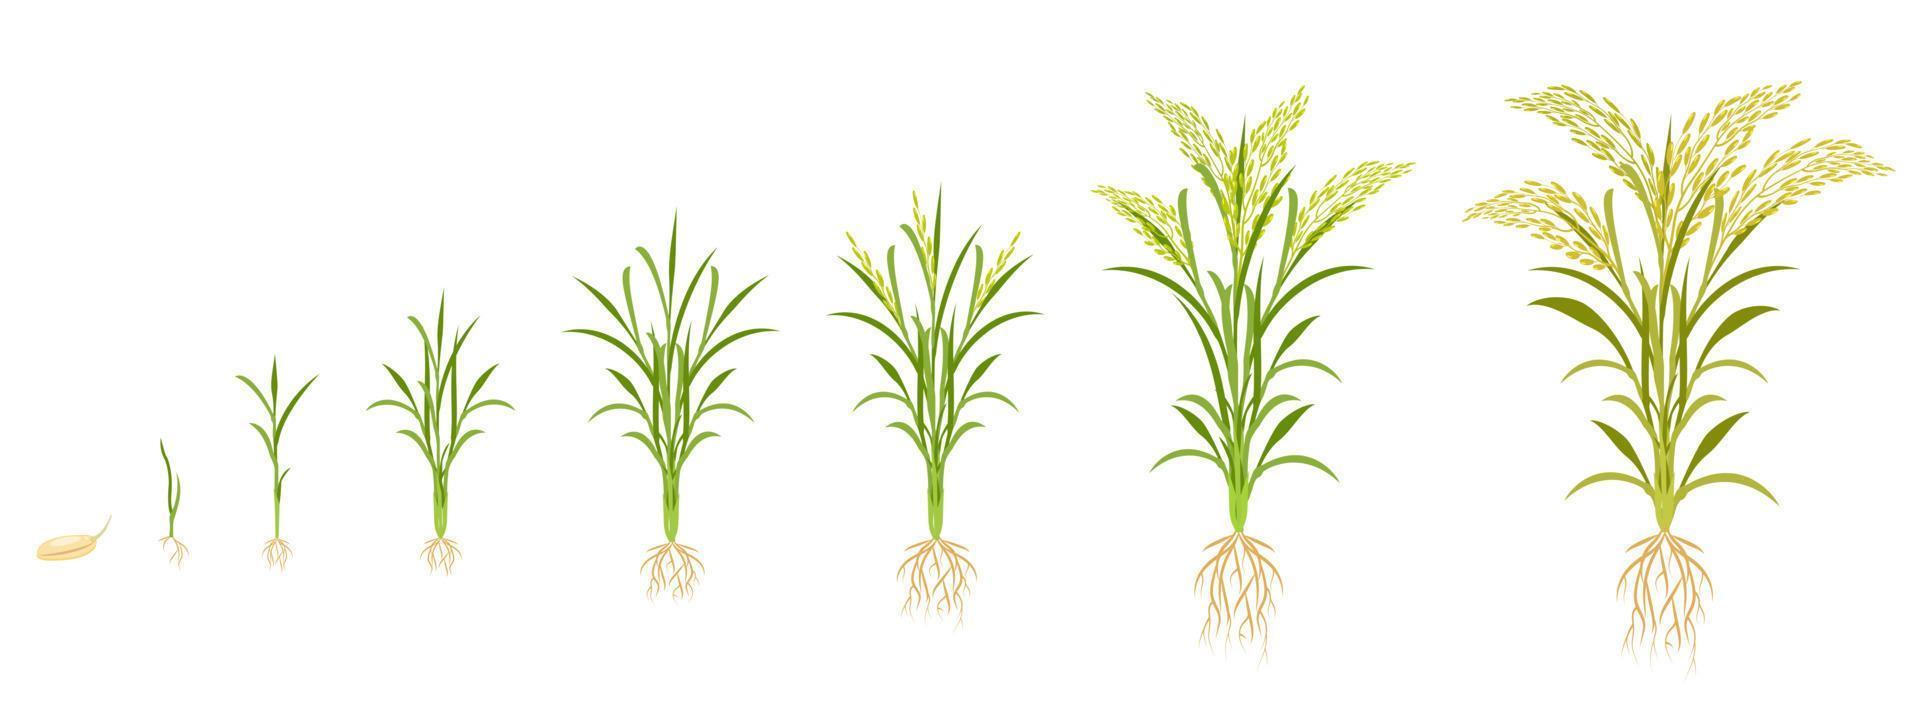 croissance du riz par étapes. cycle de croissance des céréales. infographie sur le développement des plantes de la graine à la récolte. vecteur